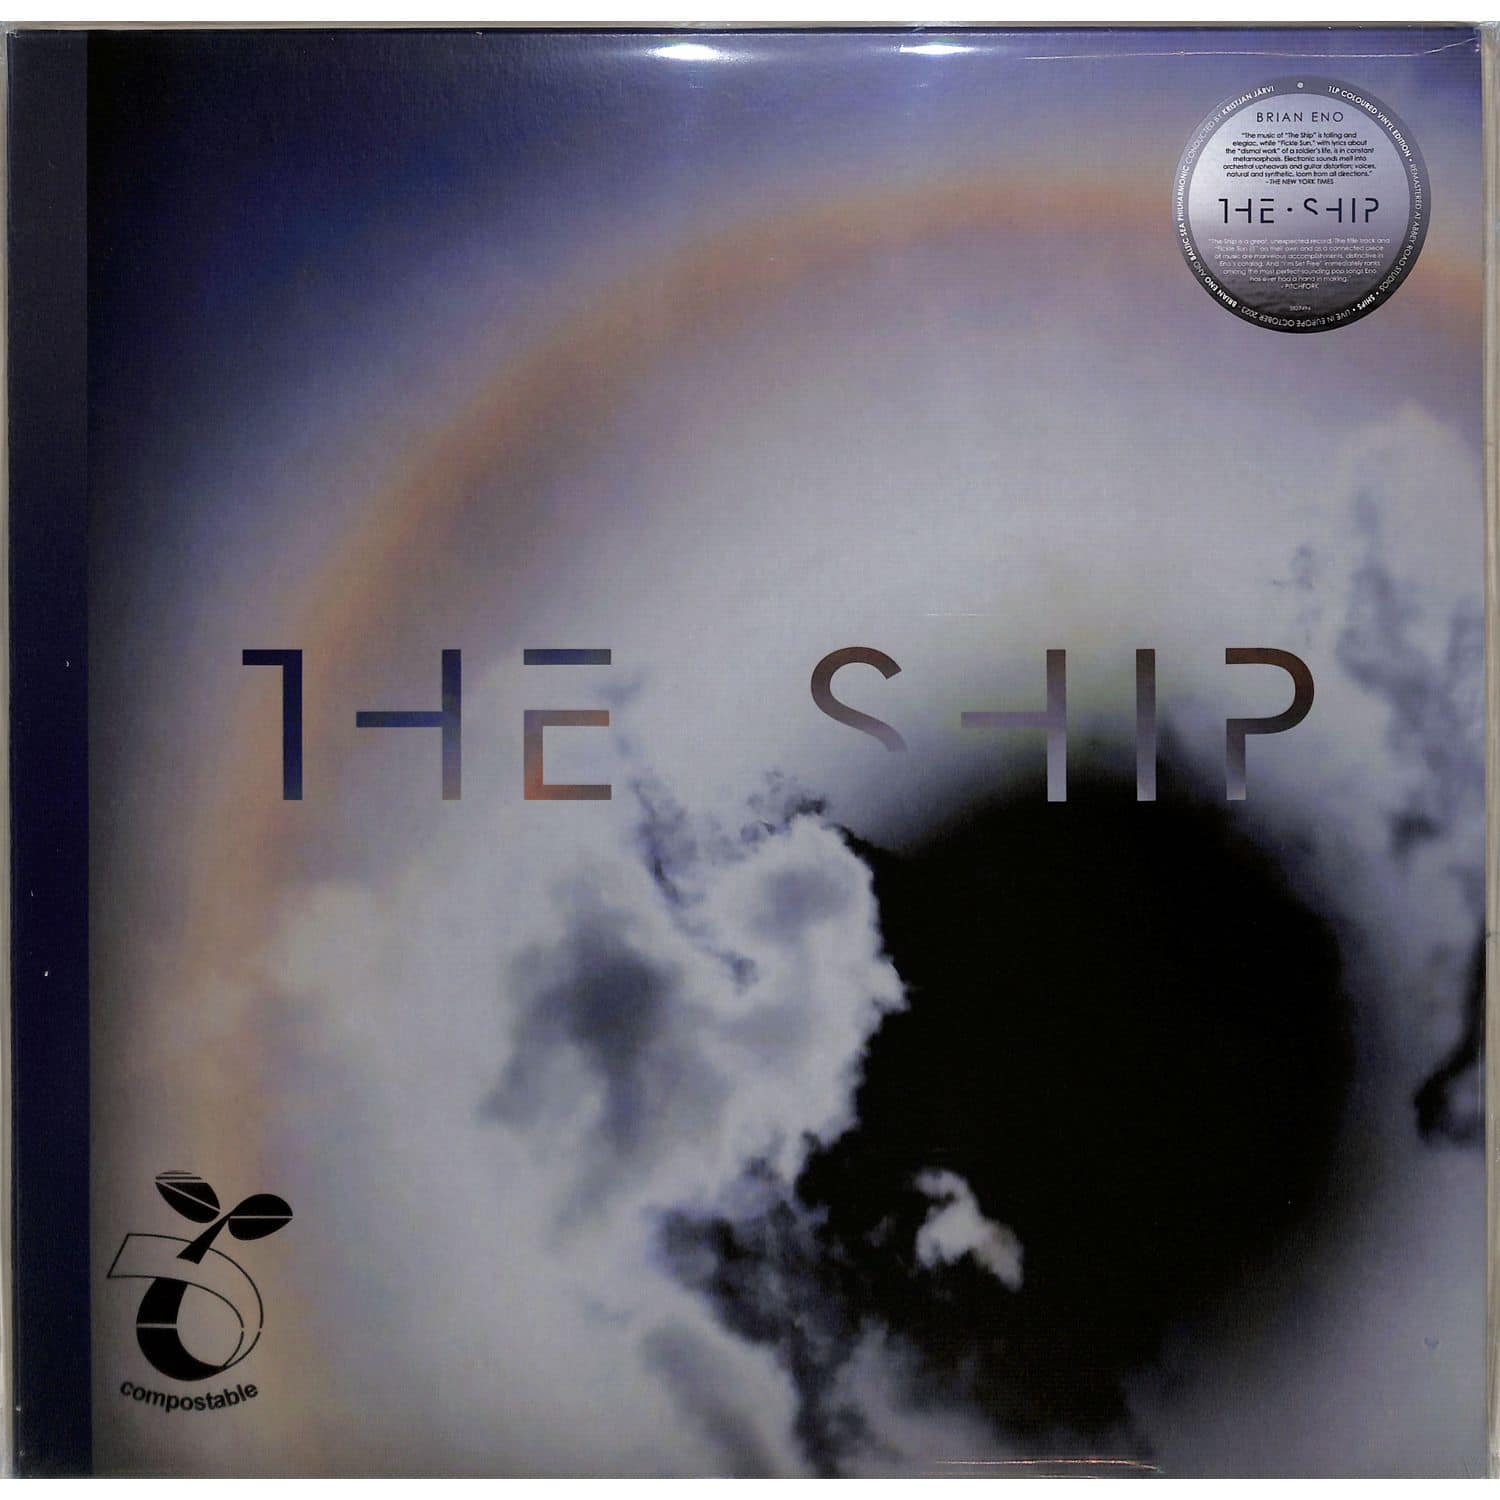 Brian Eno - THE SHIP 